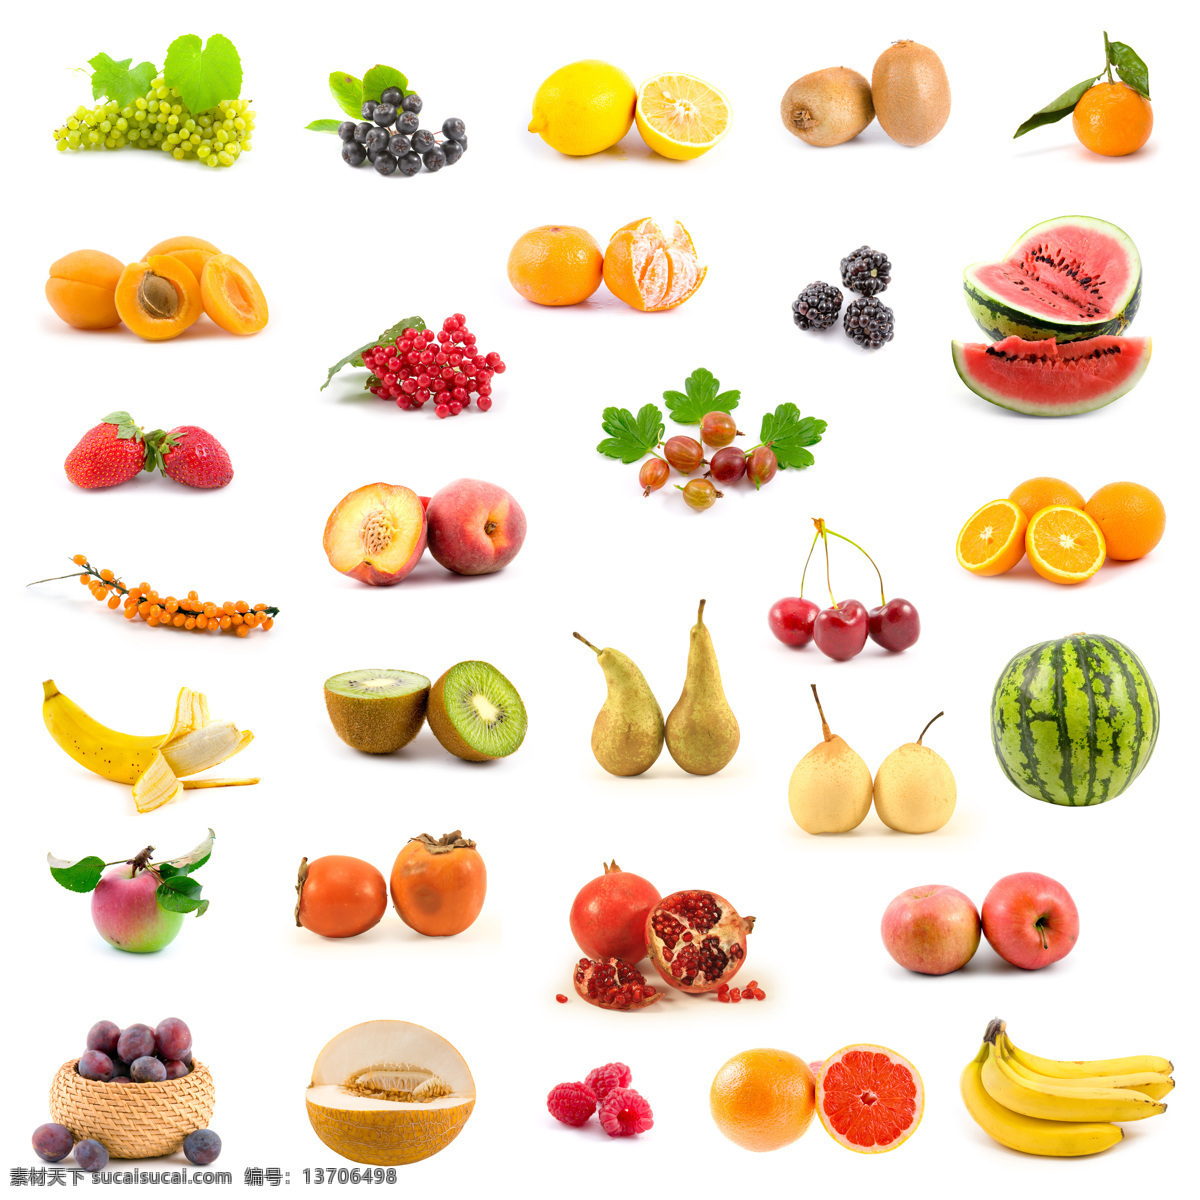 新鲜 水果 新鲜水果 香蕉 葡萄 橙子 西瓜 苹果 柿子 李子 猕猴桃 水果图片 餐饮美食